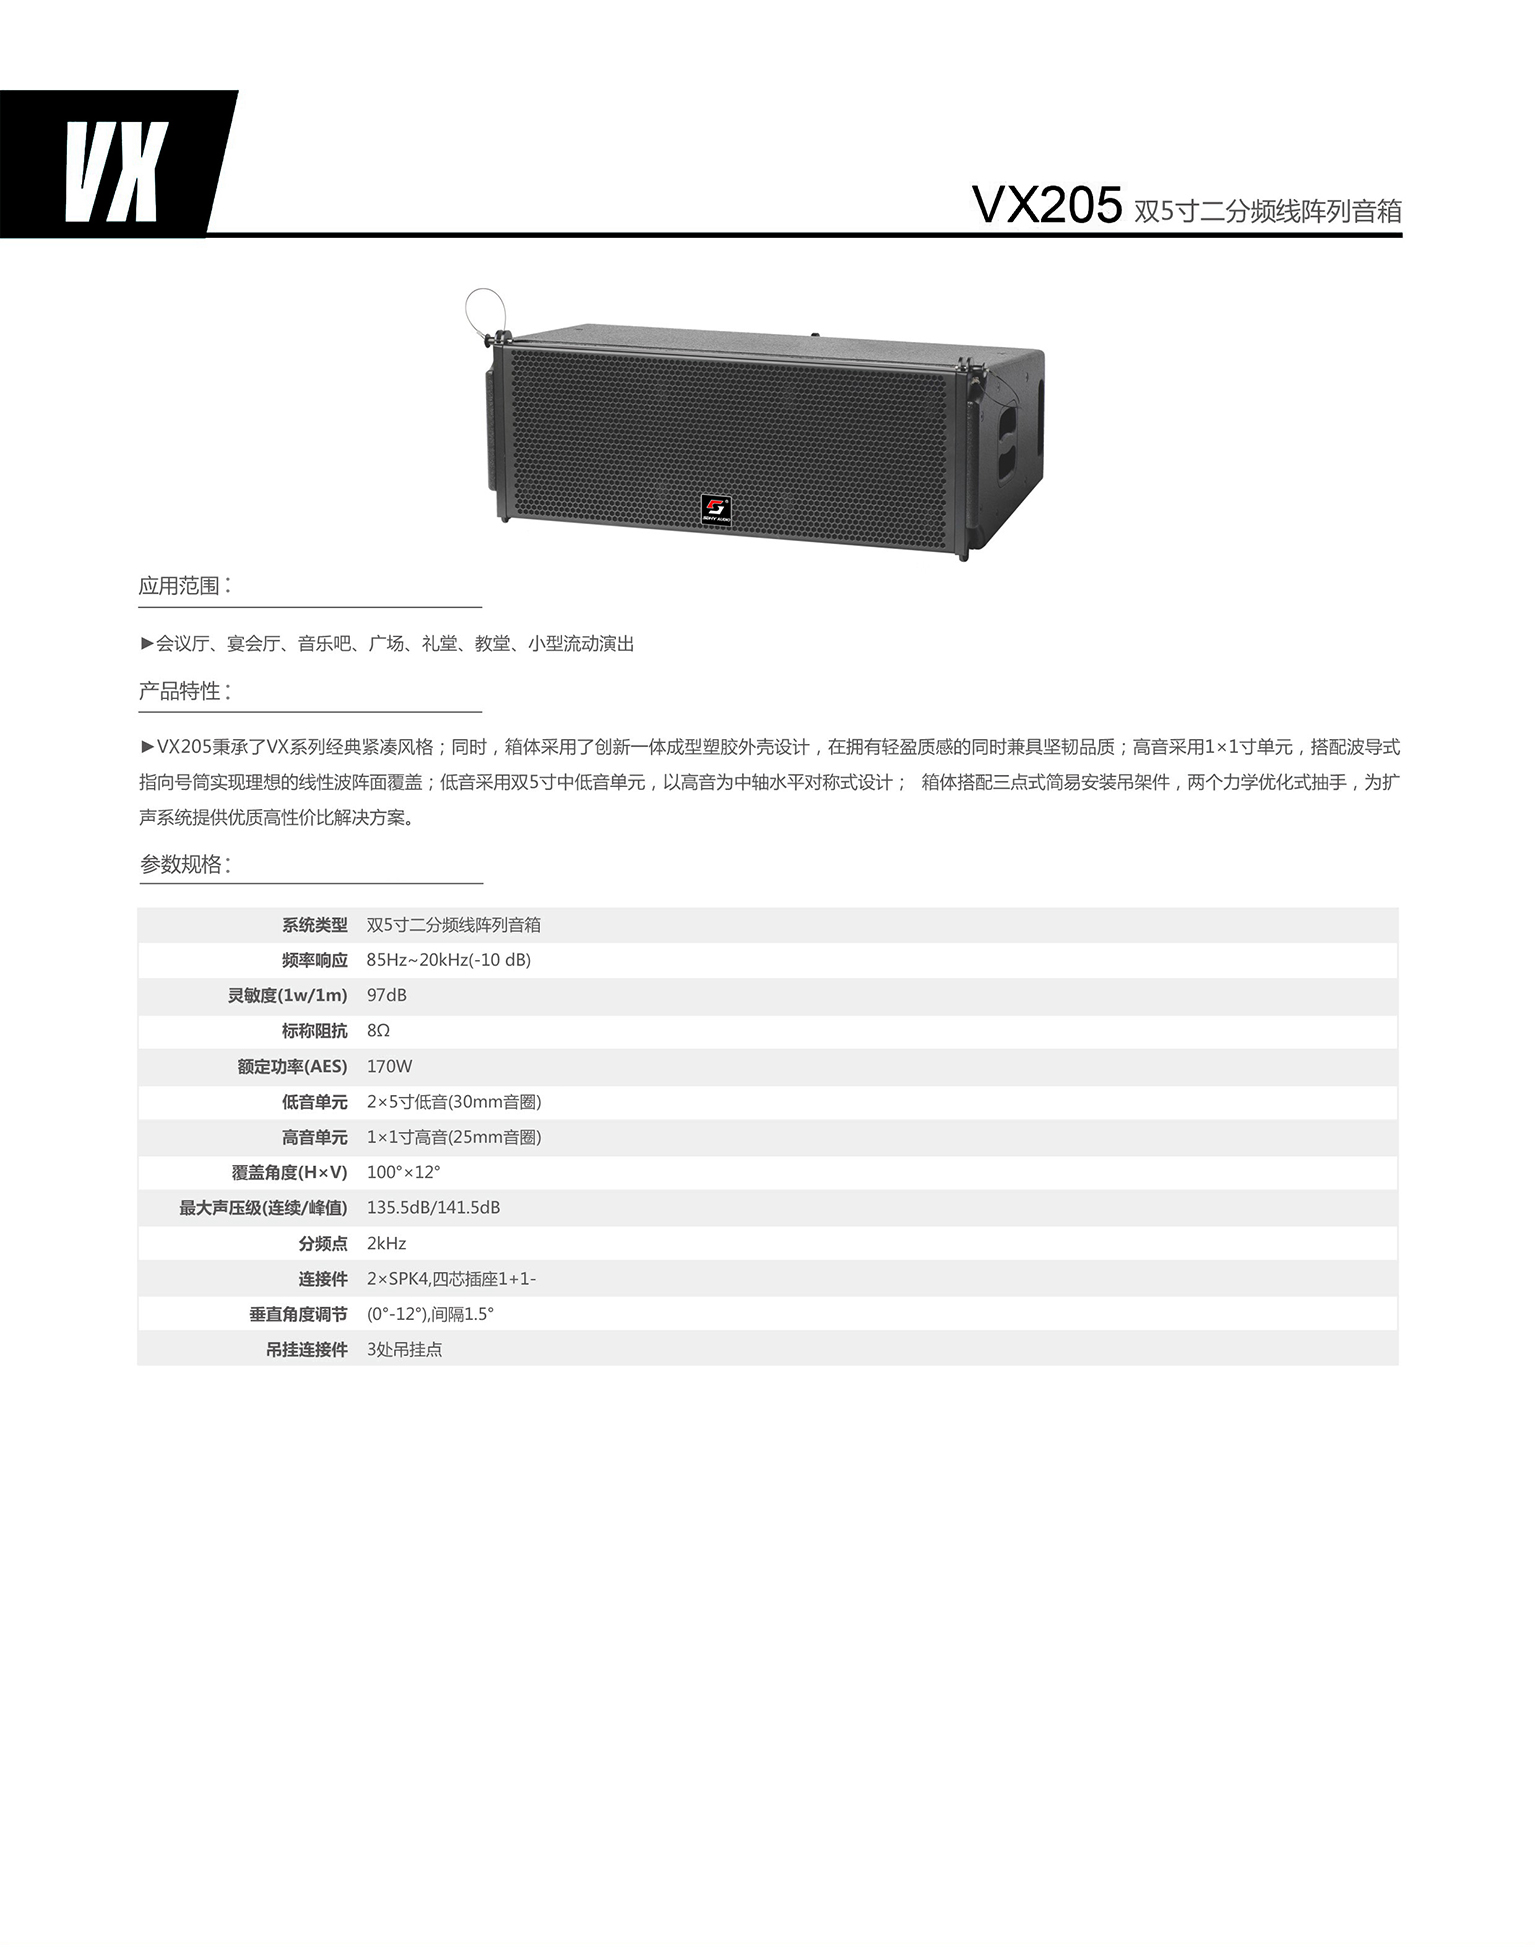 VX205 双5寸二分频线阵列音箱.jpg